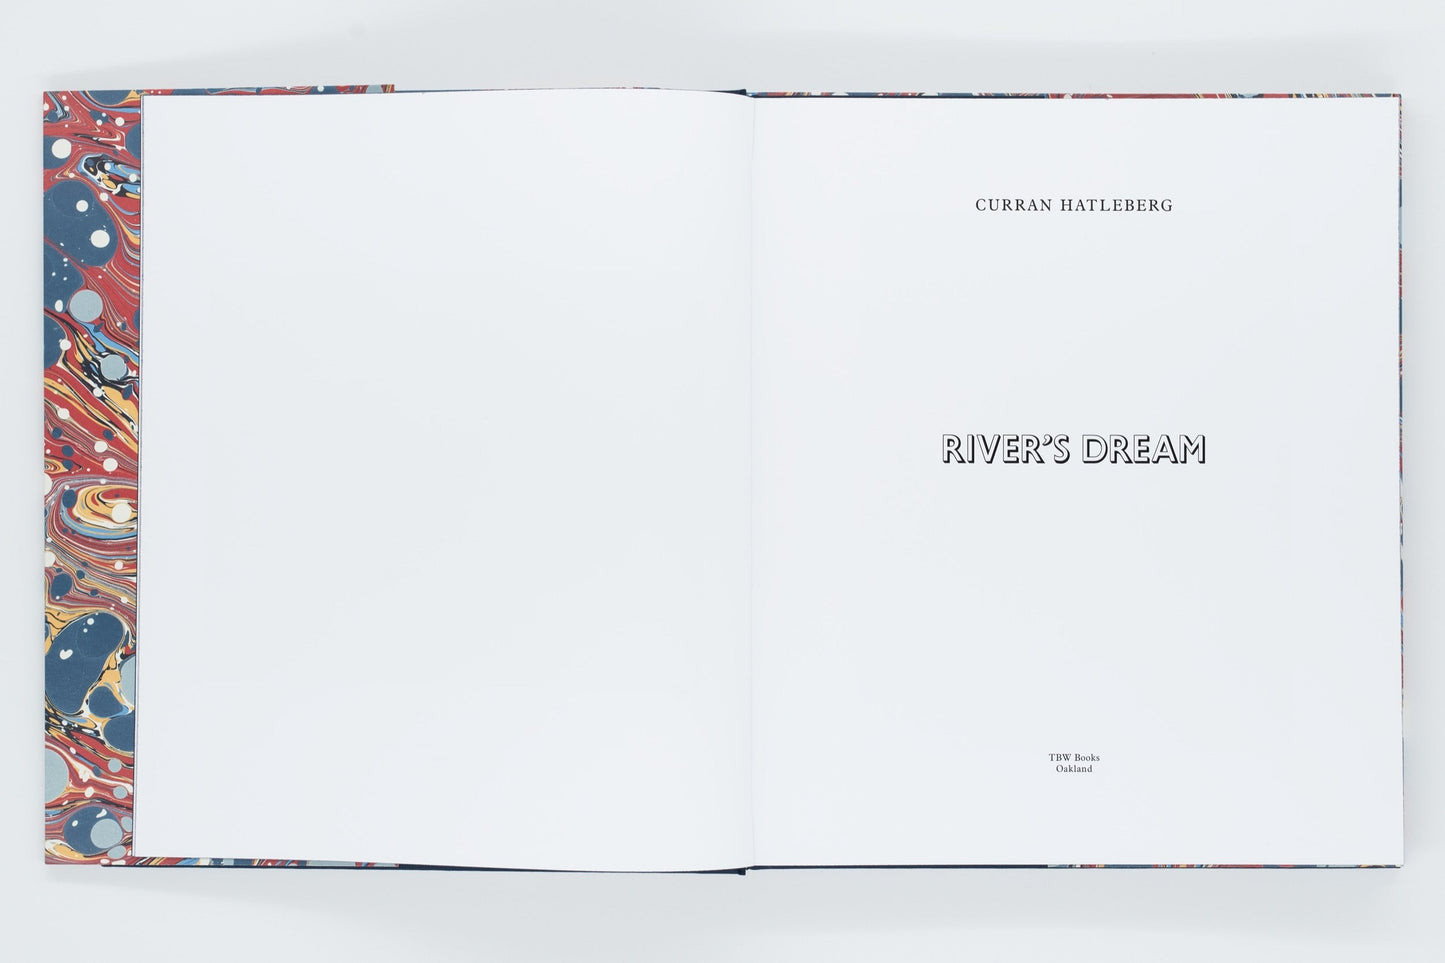 Curran Hatleberg - River’s Dream